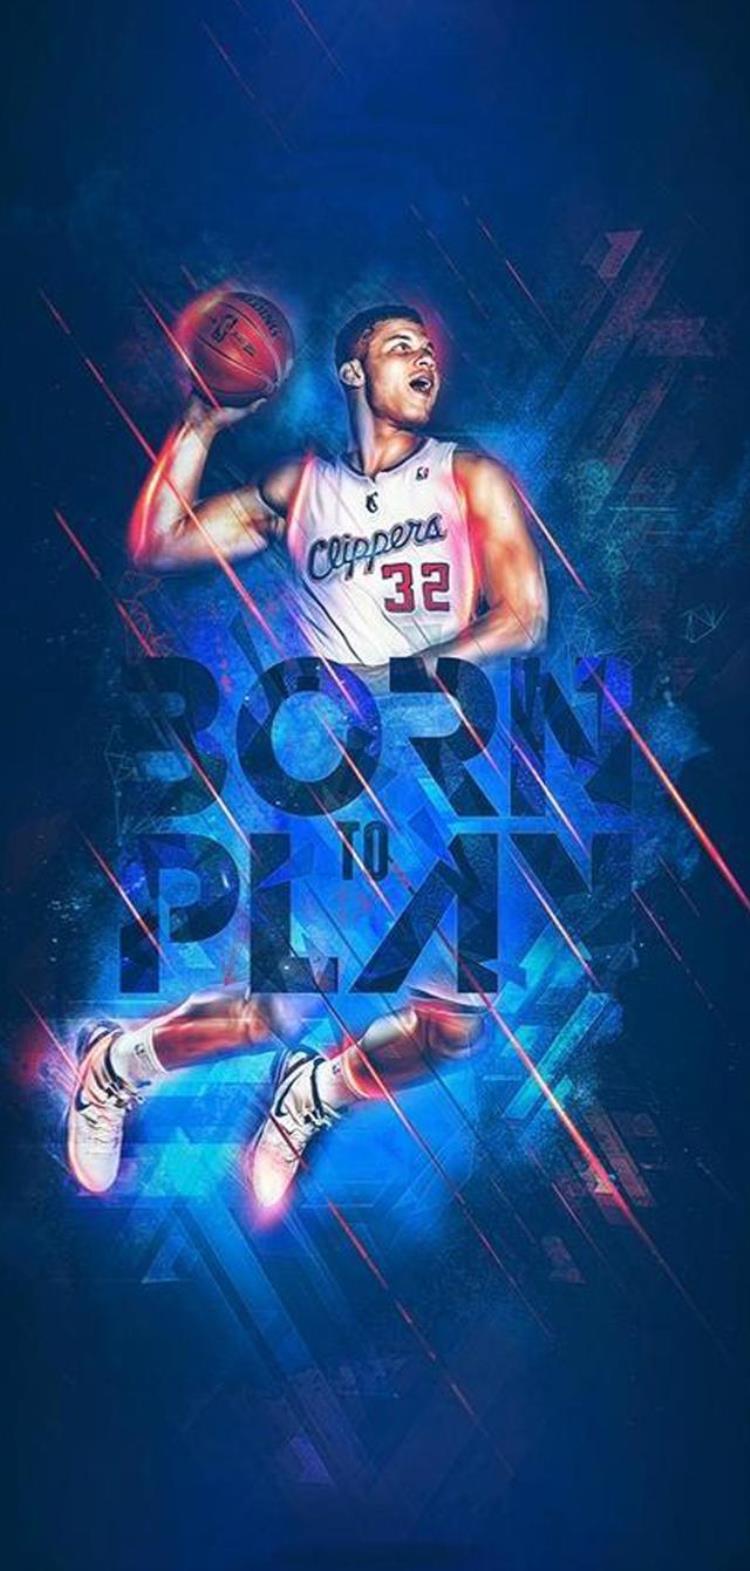 值得珍藏的一组nba球星酷炫海报「值得珍藏的一组NBA球星酷炫海报」